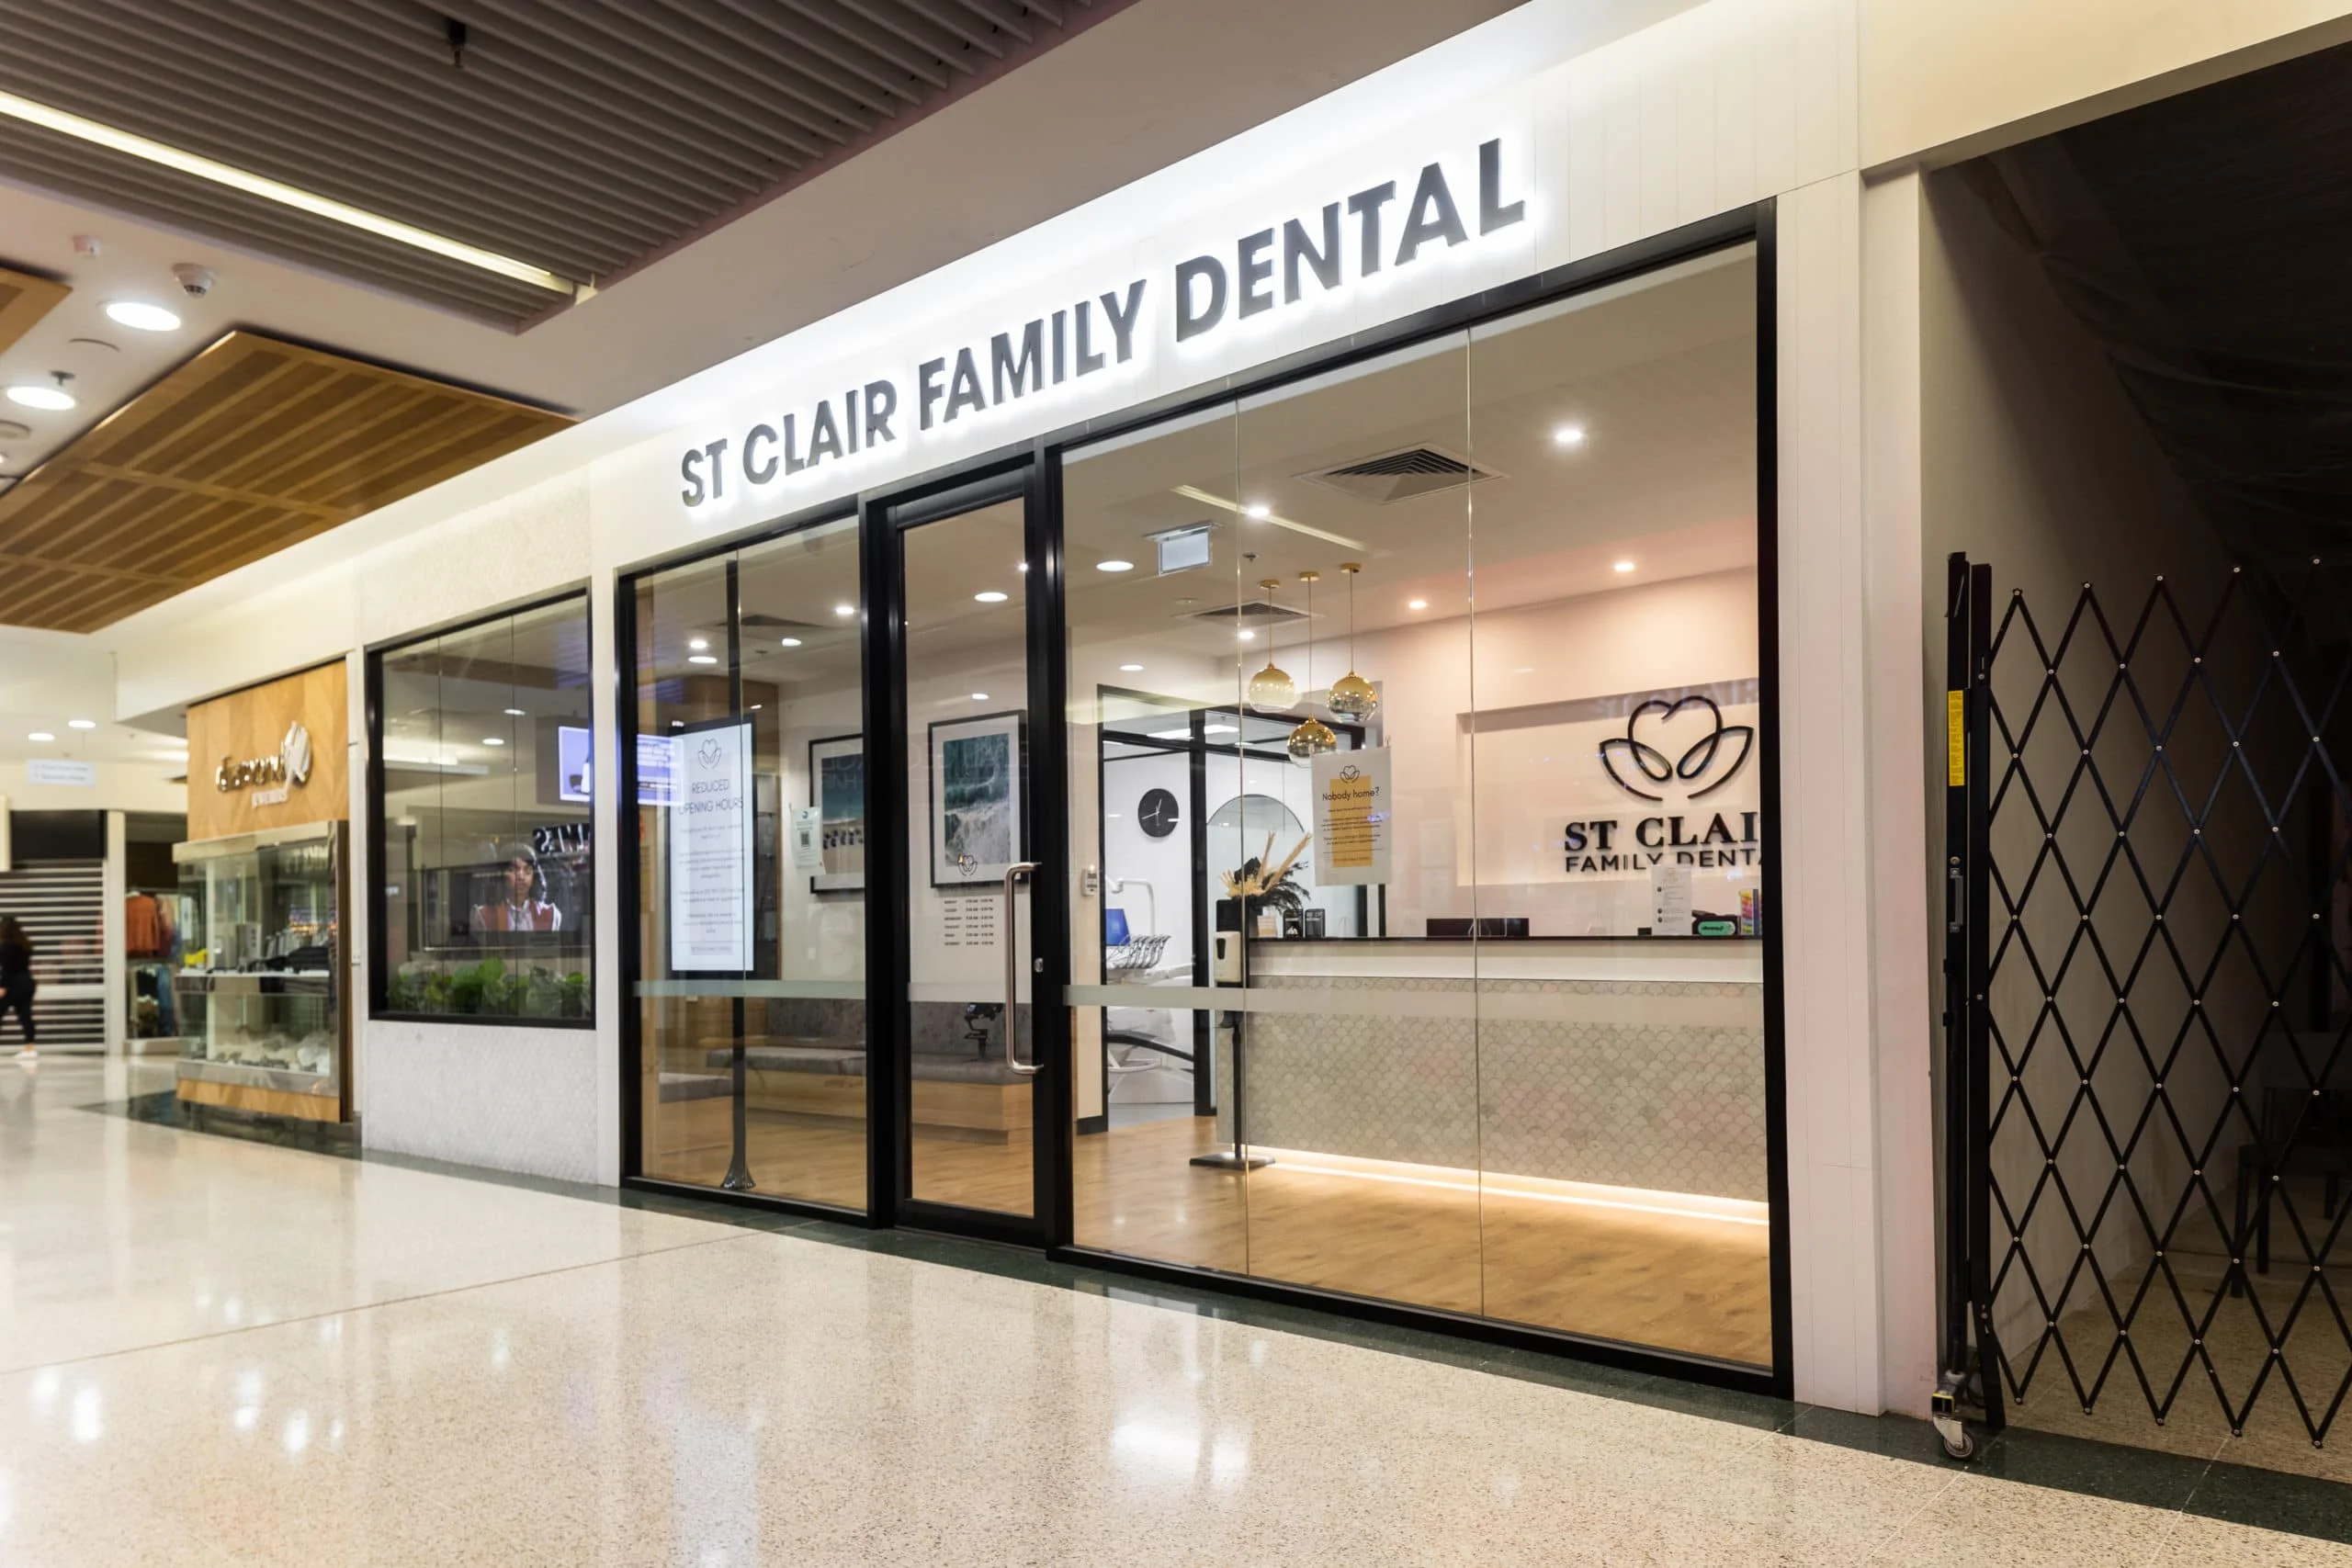 St Clair Family Dental Clinic Entrance